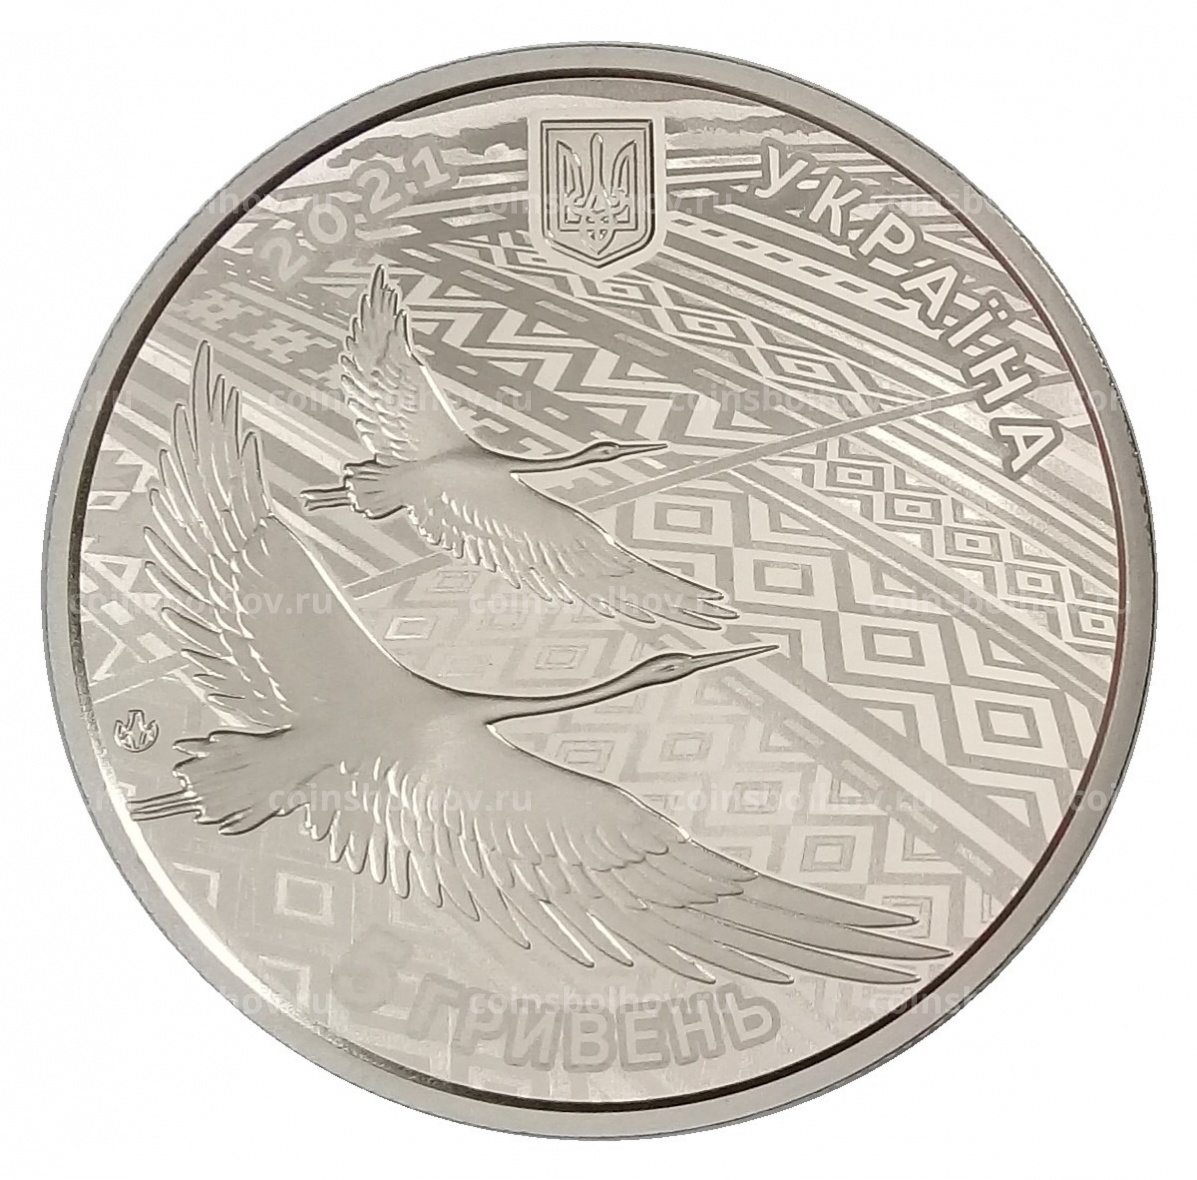 5 гривен в рублях на сегодня. 5 Гривен 2021 30 лет независимости. 5 Гривен в рублях. 30 Лет независимости Украины 5 гривен монета в буклете.